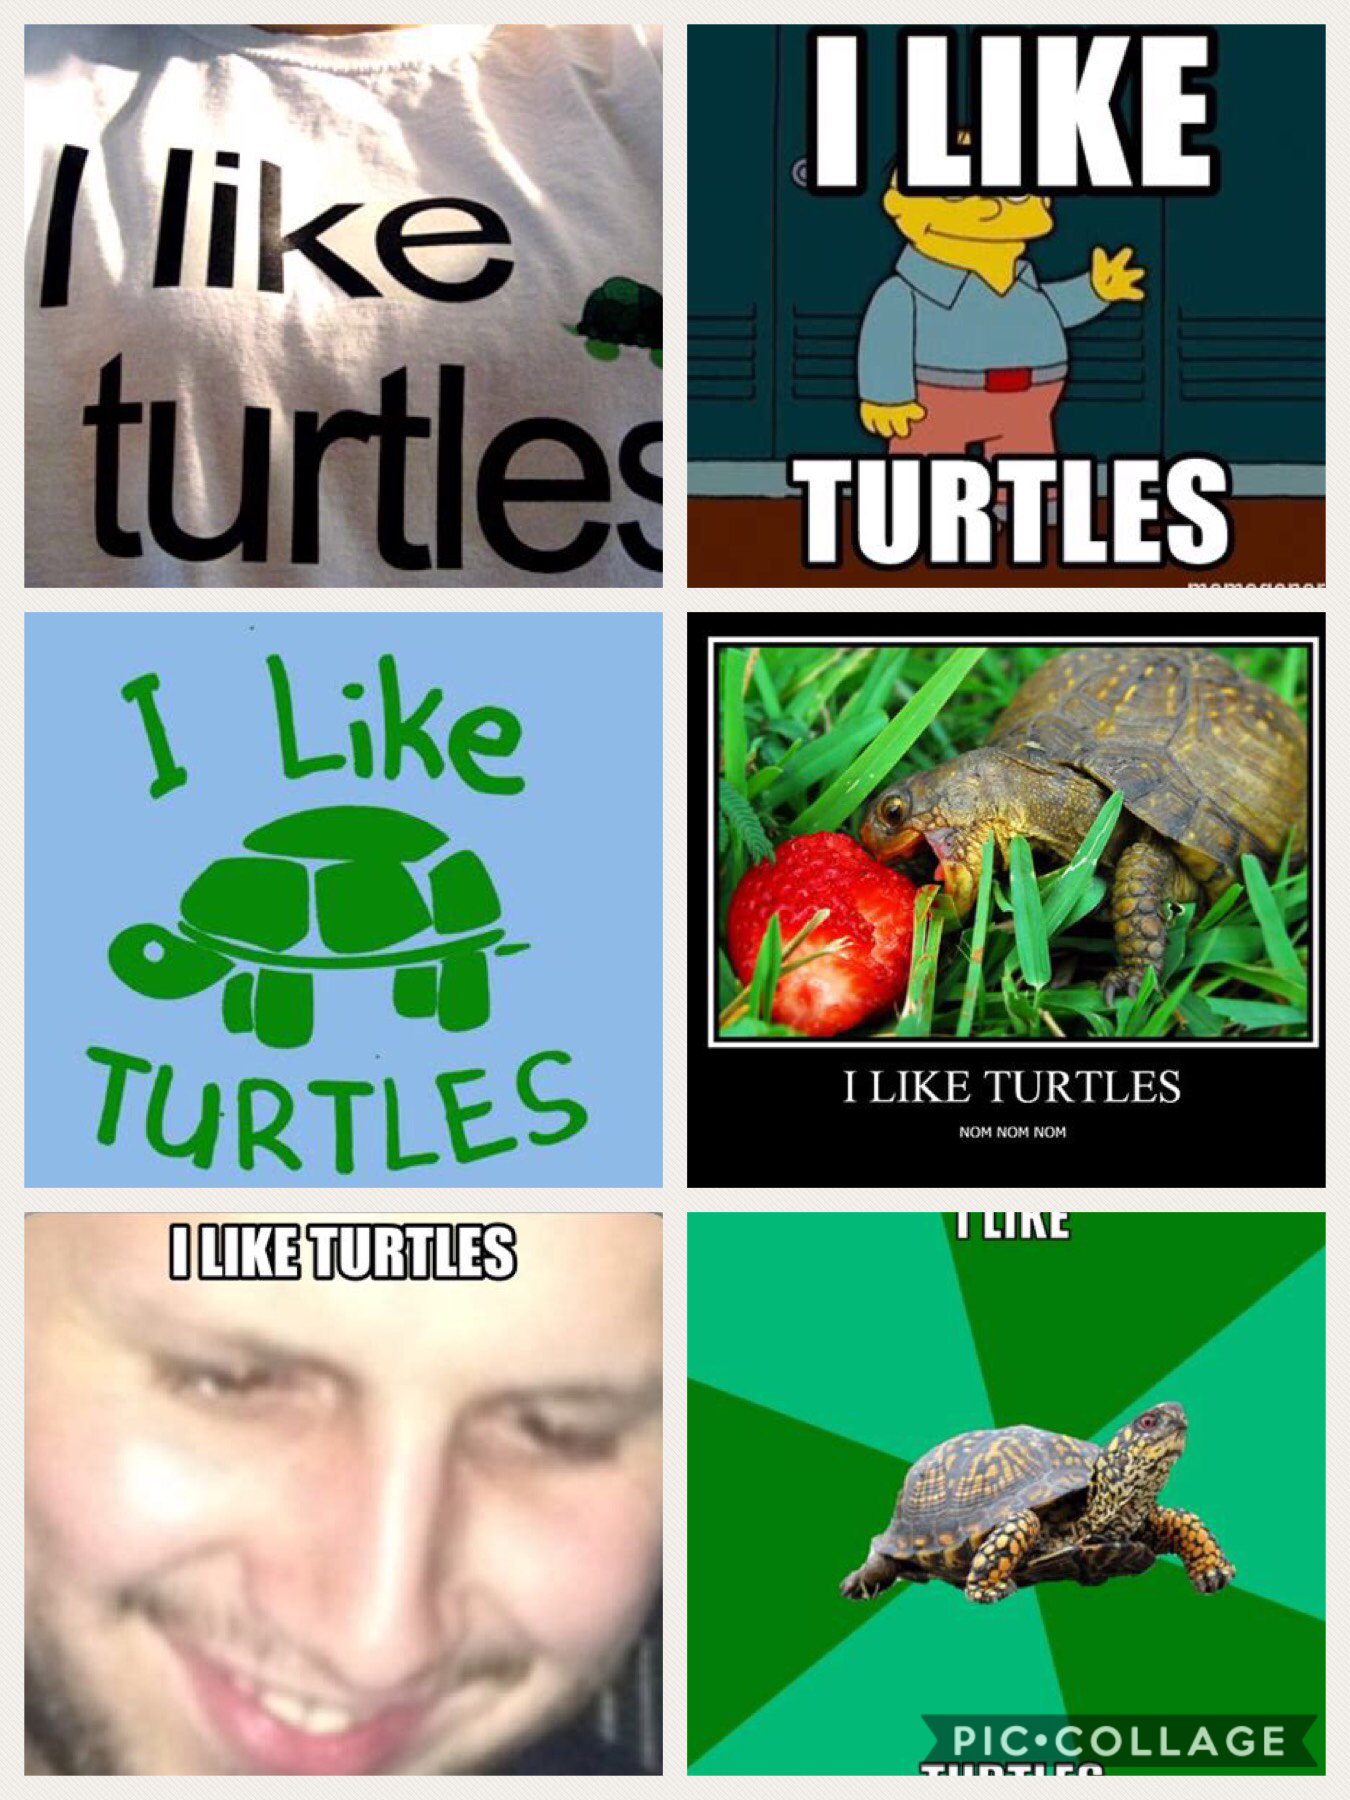 I like turtles 